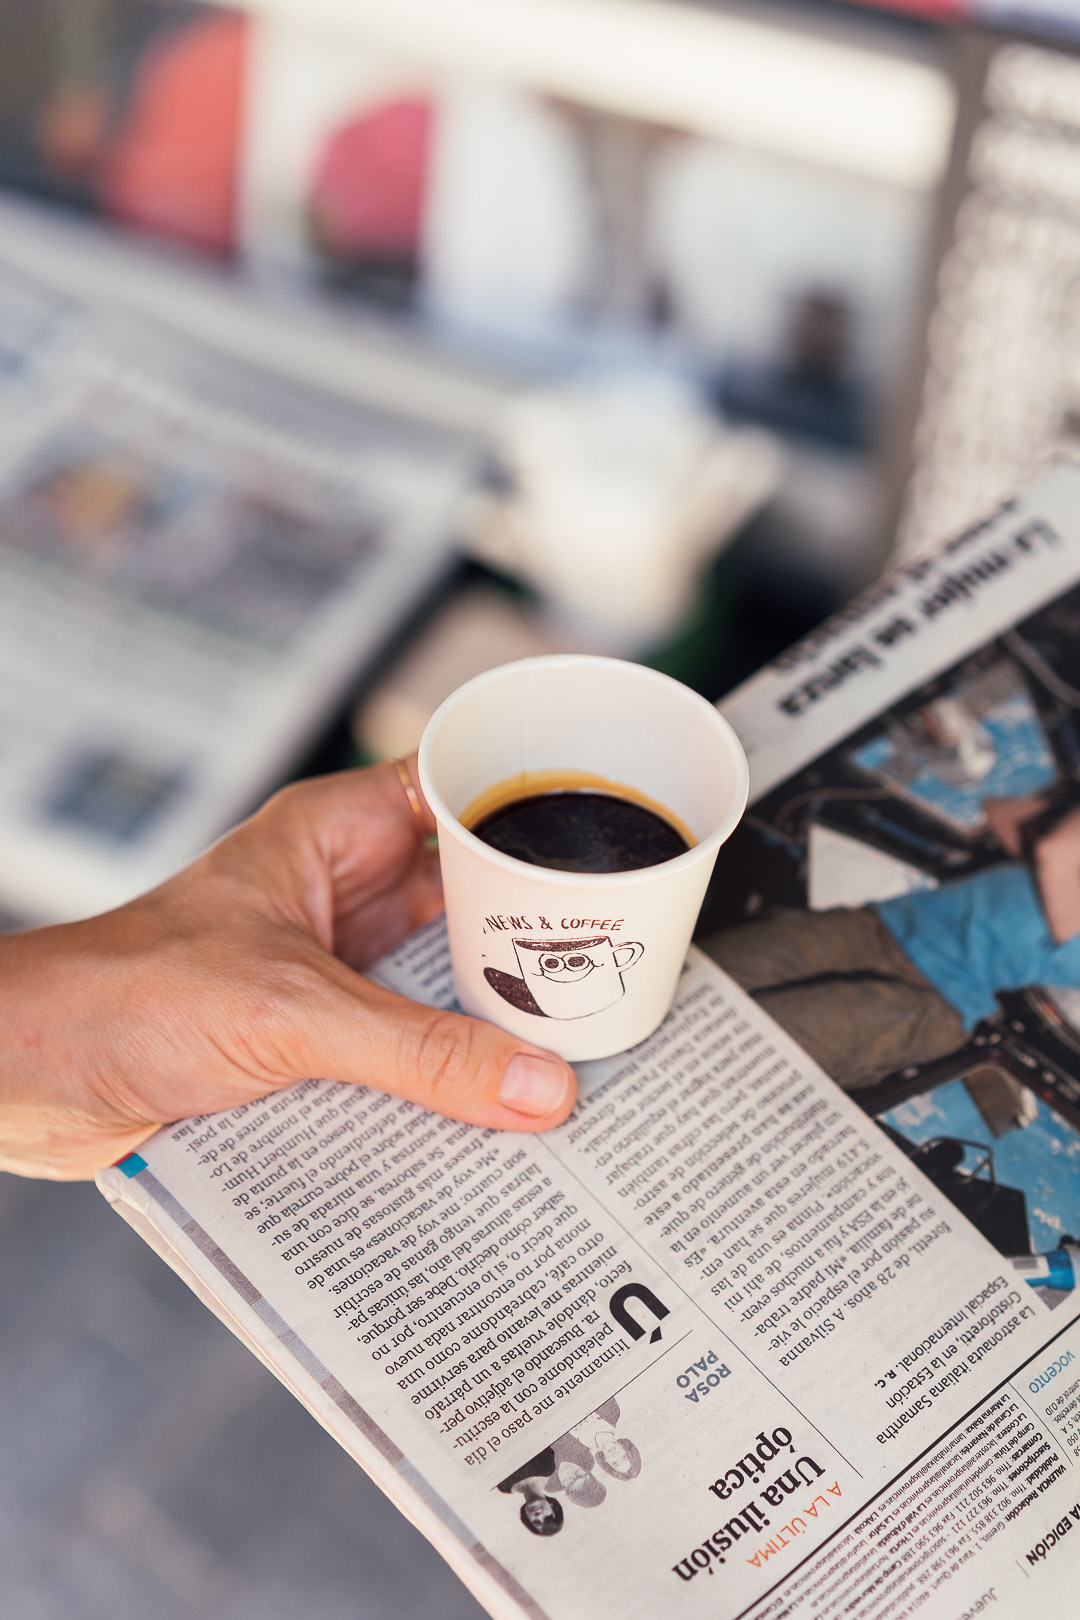 News & Coffee, stockists 8